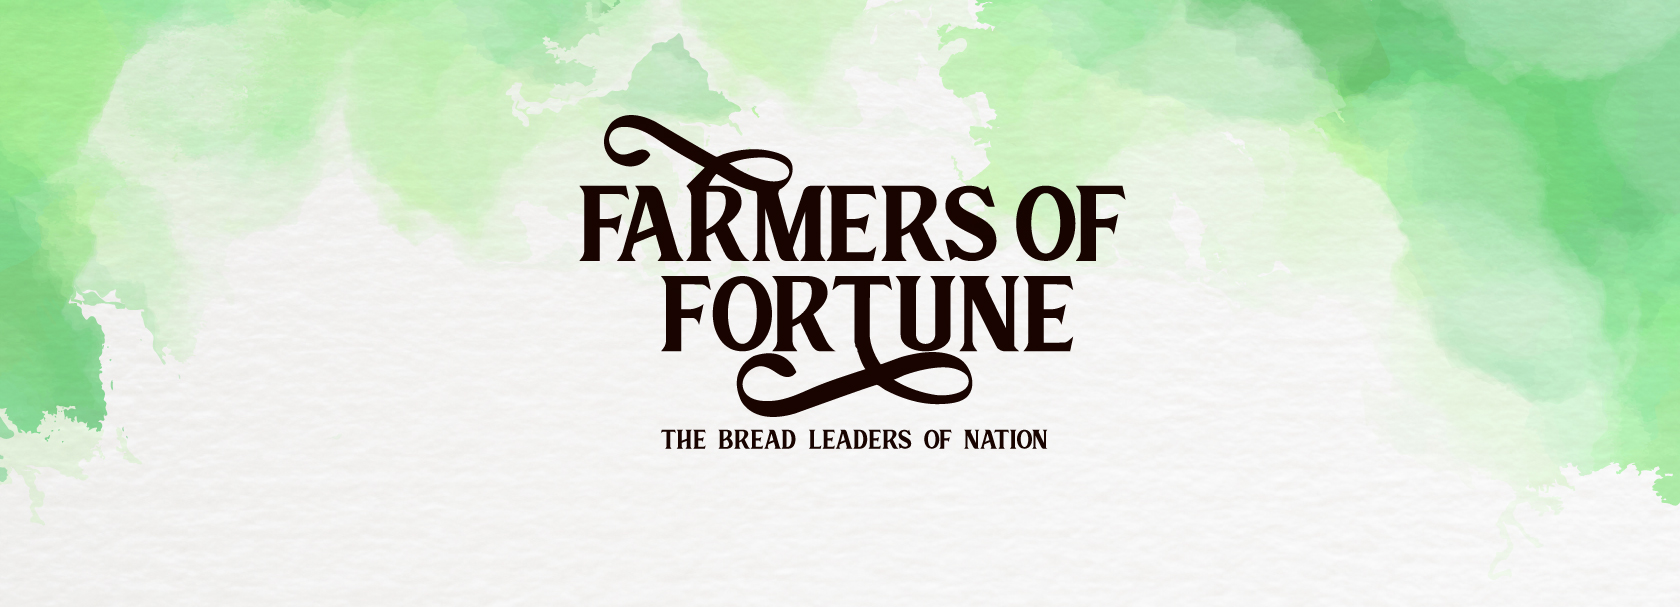 Farmers pf Fortune Coffee Table Book Design